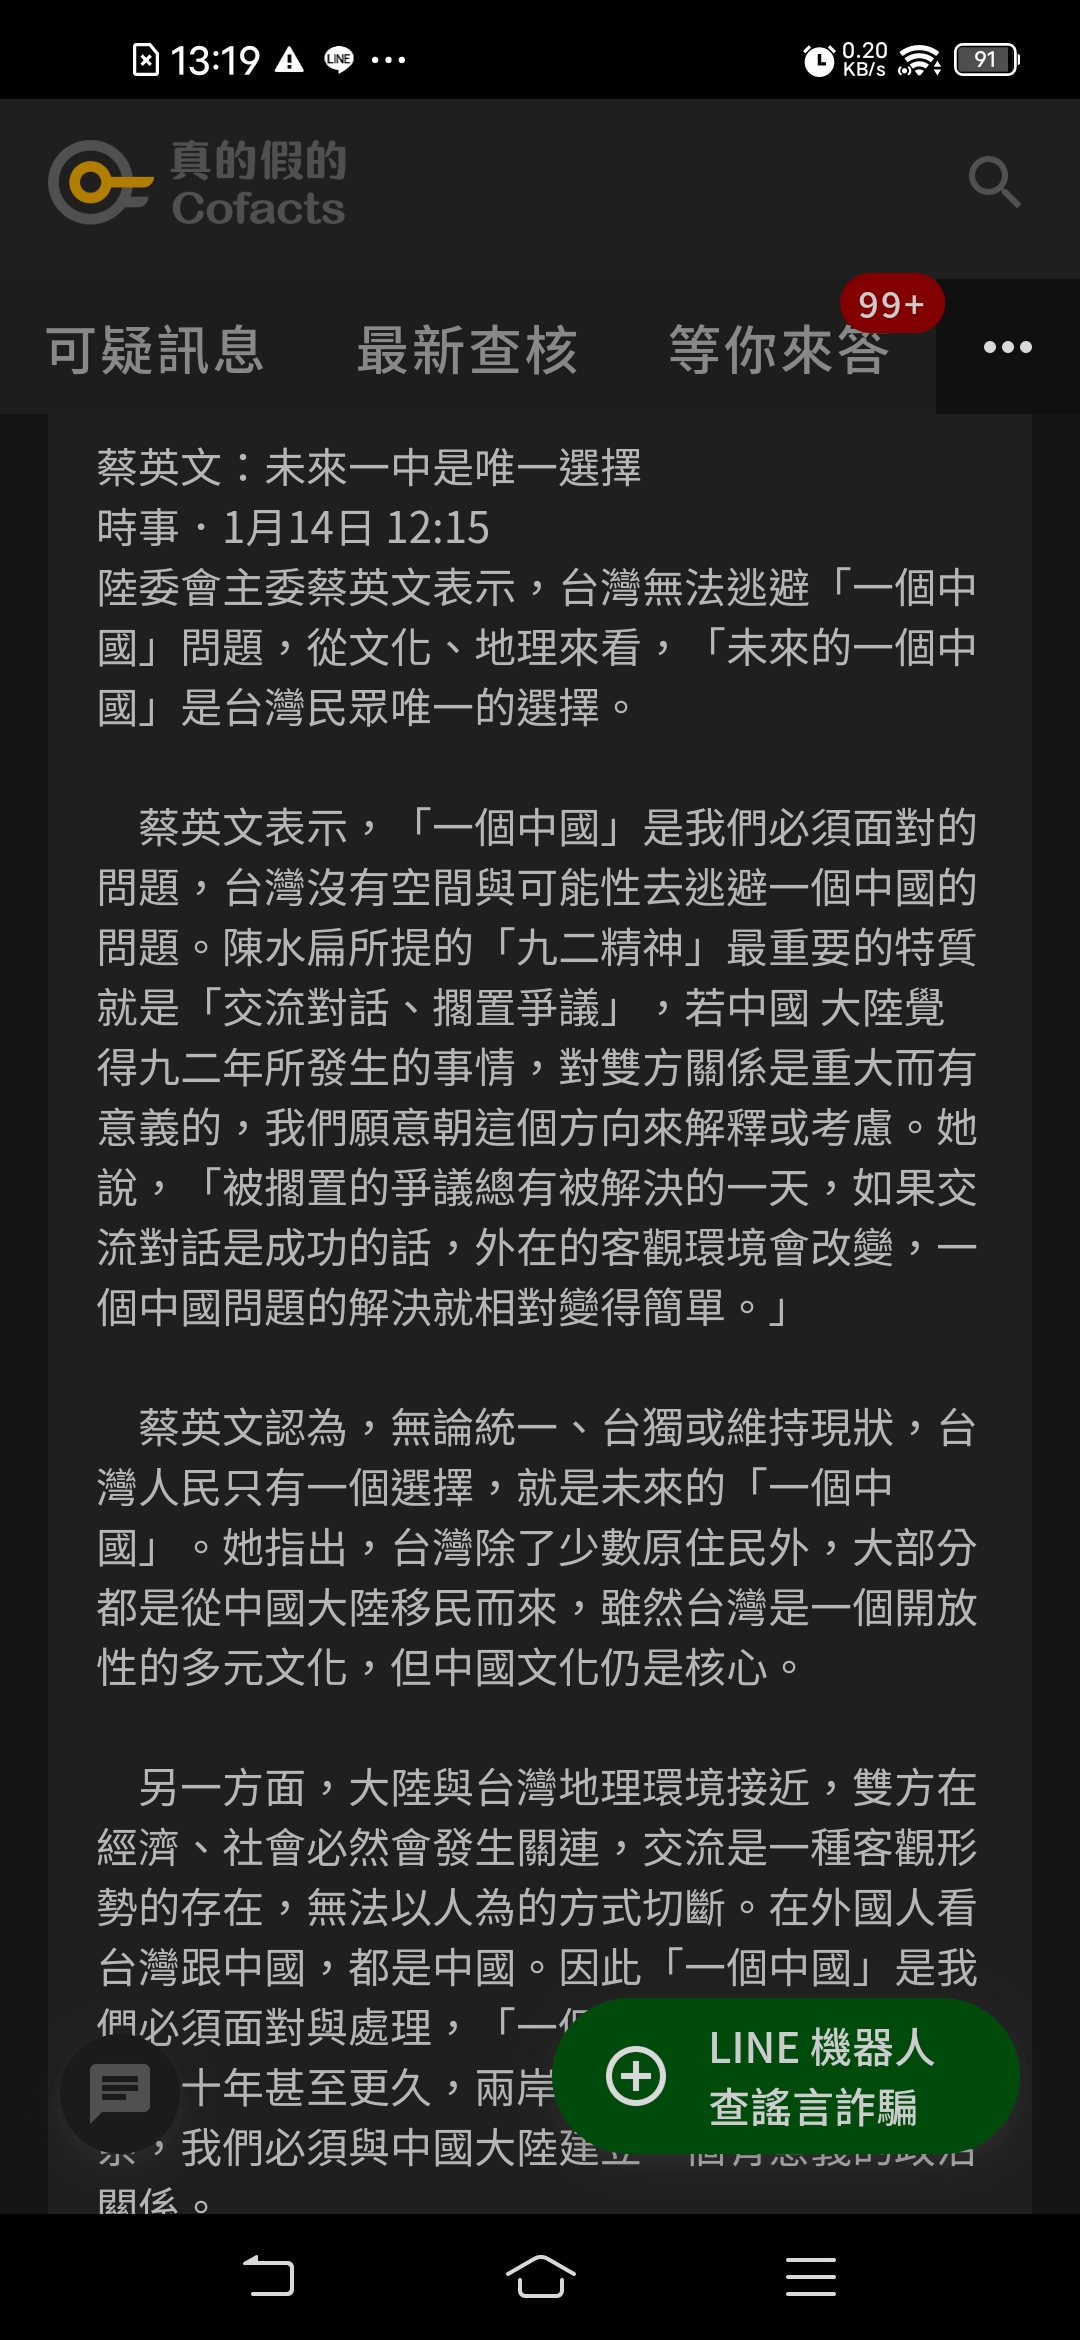 圖https://upload.cc/i4/prhdA.jpg, [討論] 蔡英文說台灣已經獨立下次選舉怎辦